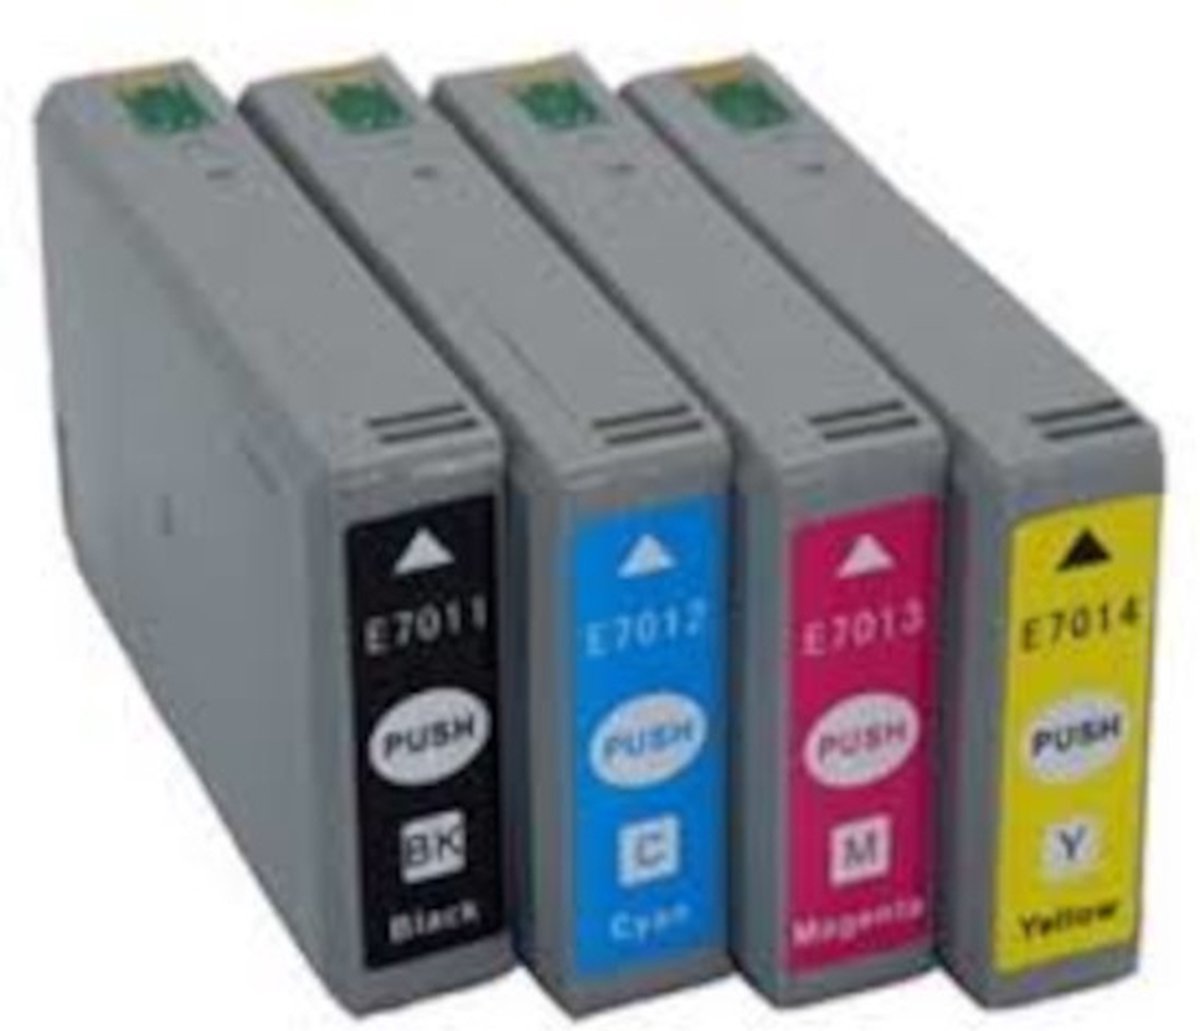 Epson T7015 inkt cartridge Multipack - Huismerk set (4 st.)